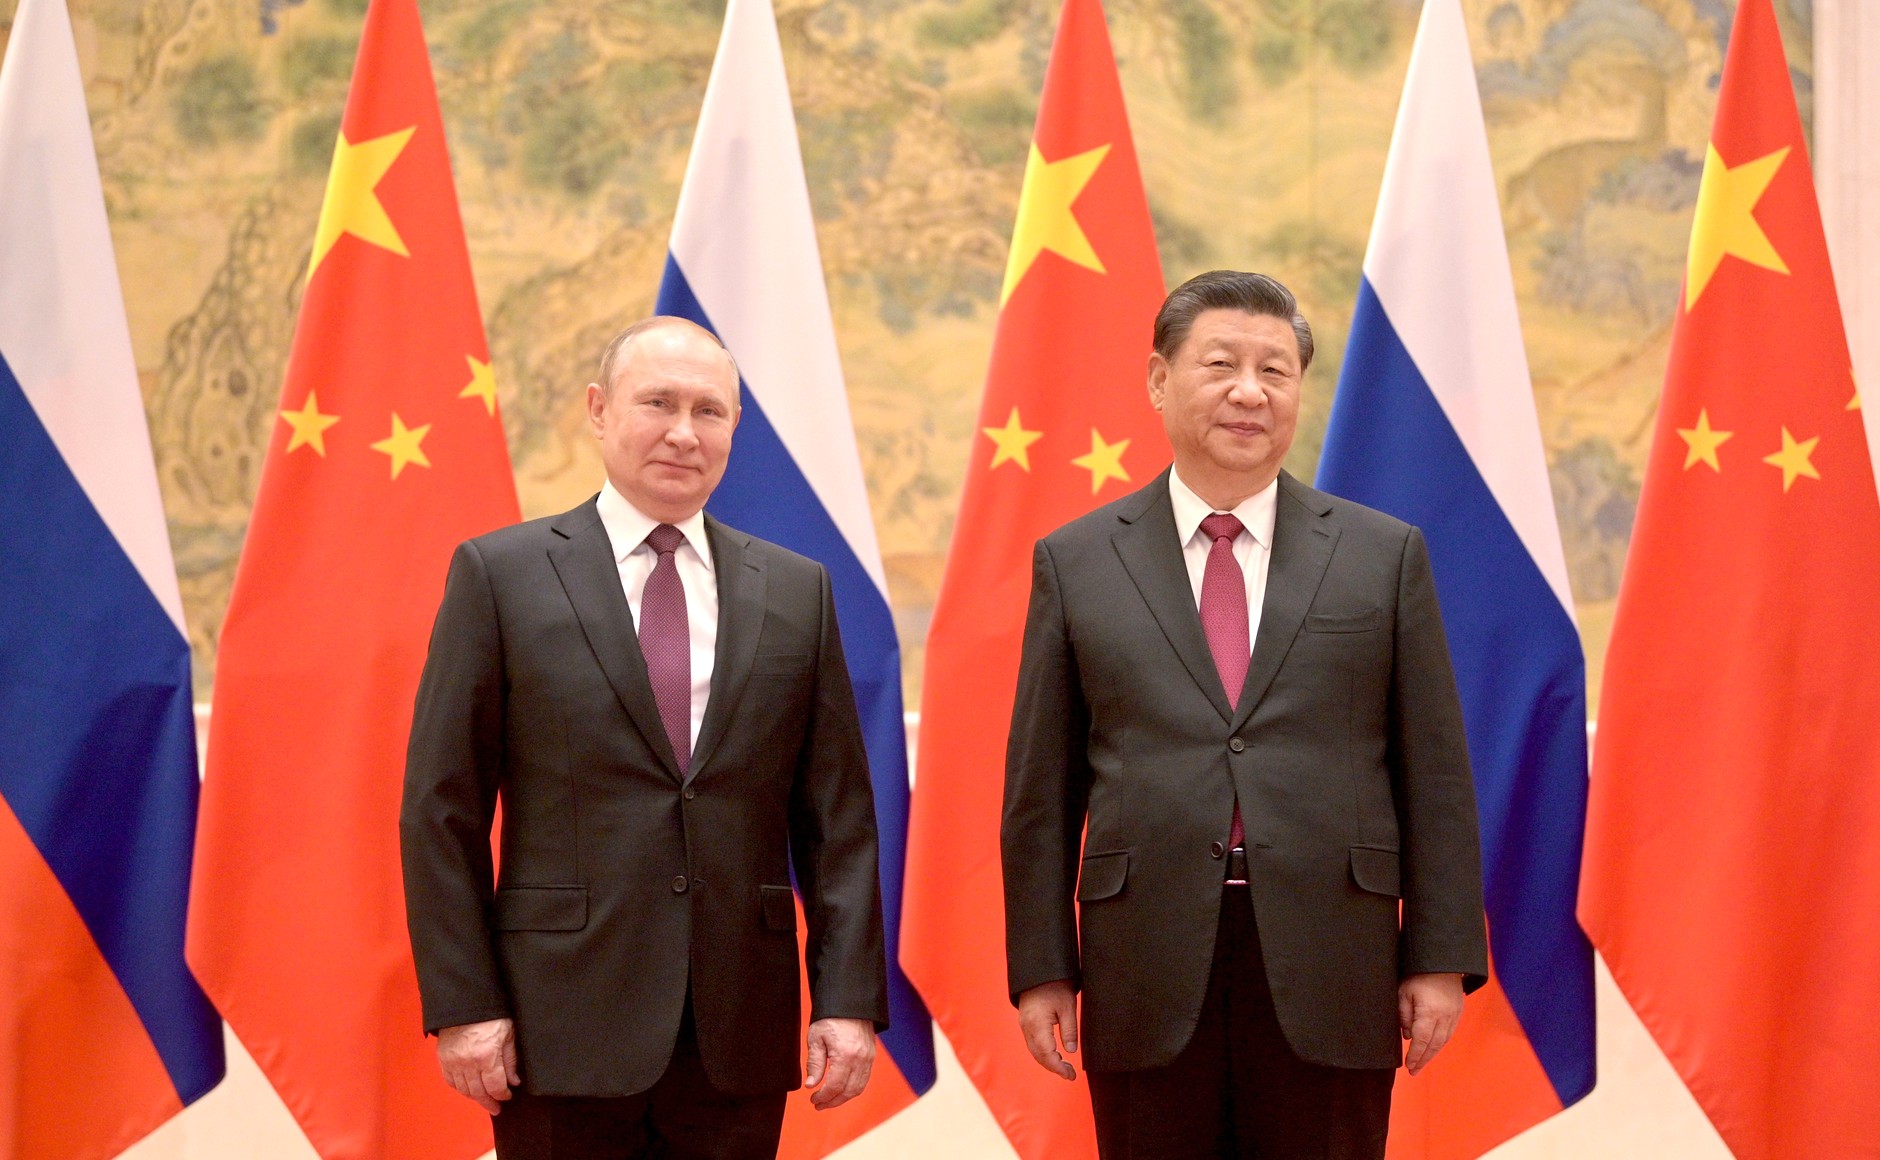 Опубликована статья Путина об отношениях России с Китаем